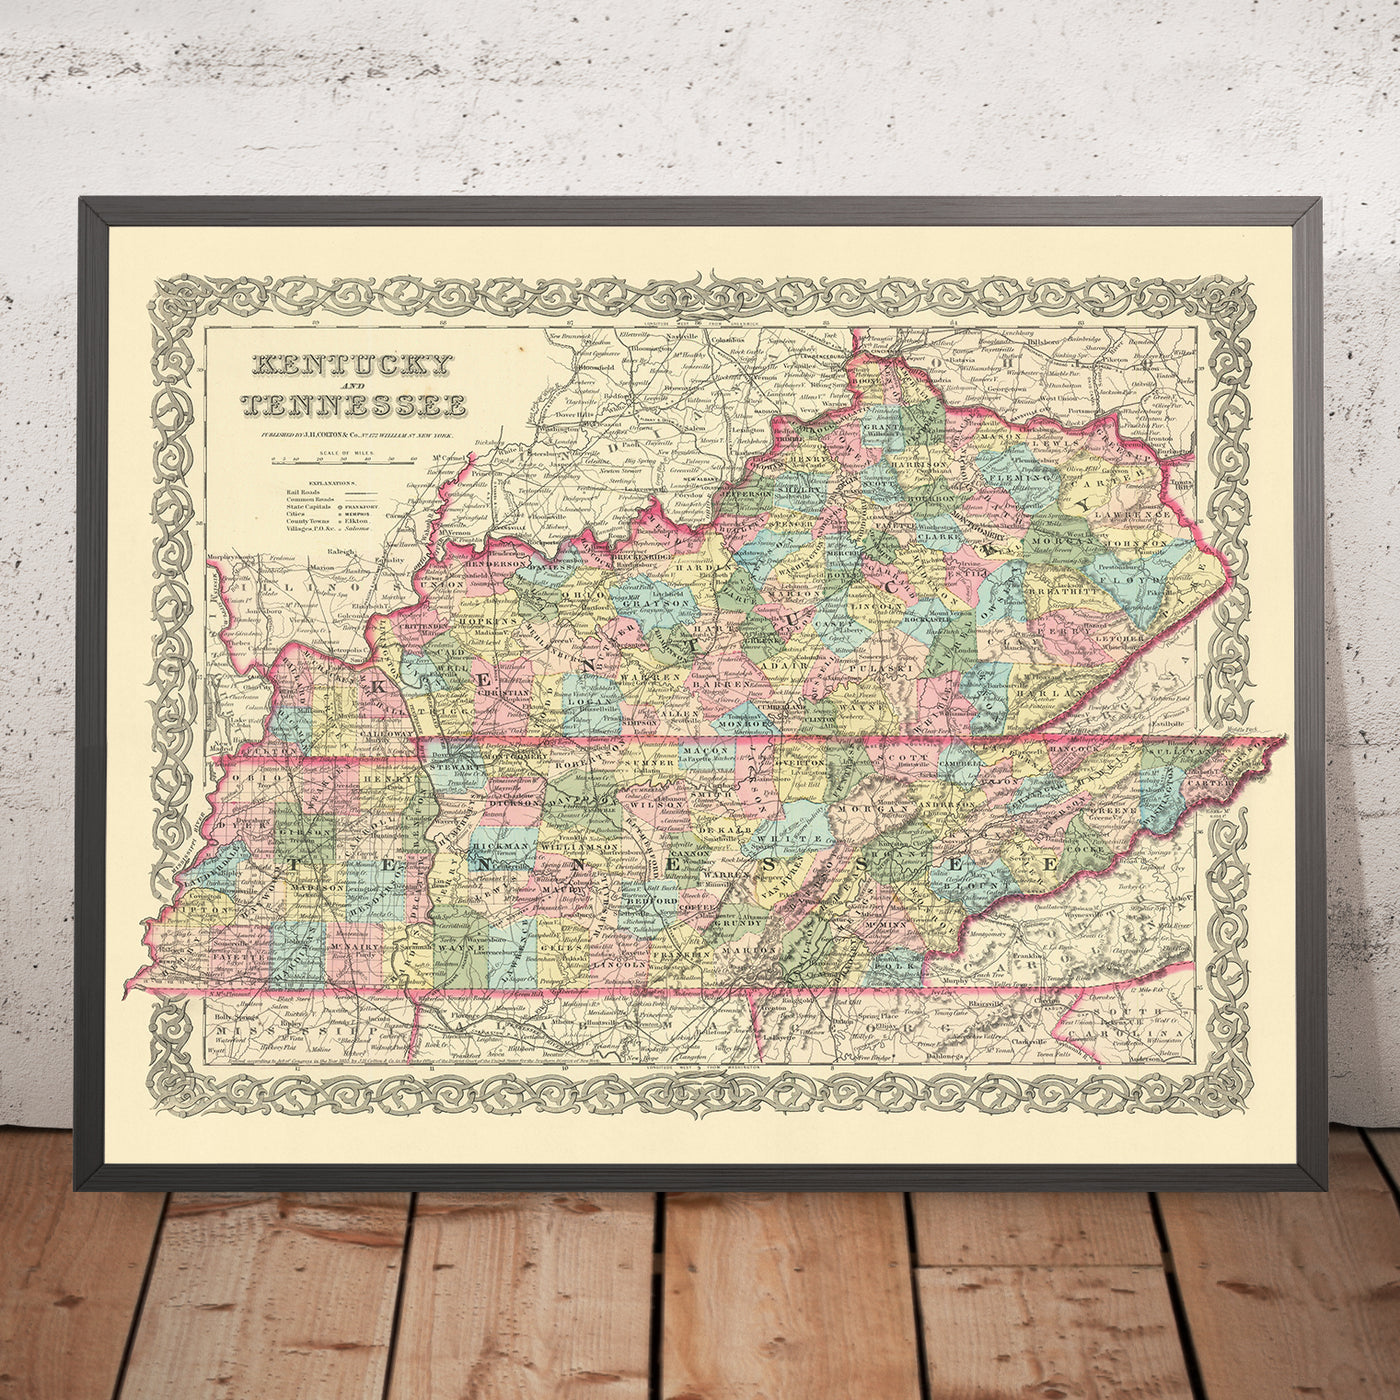 Mapa antiguo de Kentucky por JH Colton, 1855: Louisville, Lexington, Frankfort, Covington y Bowling Green